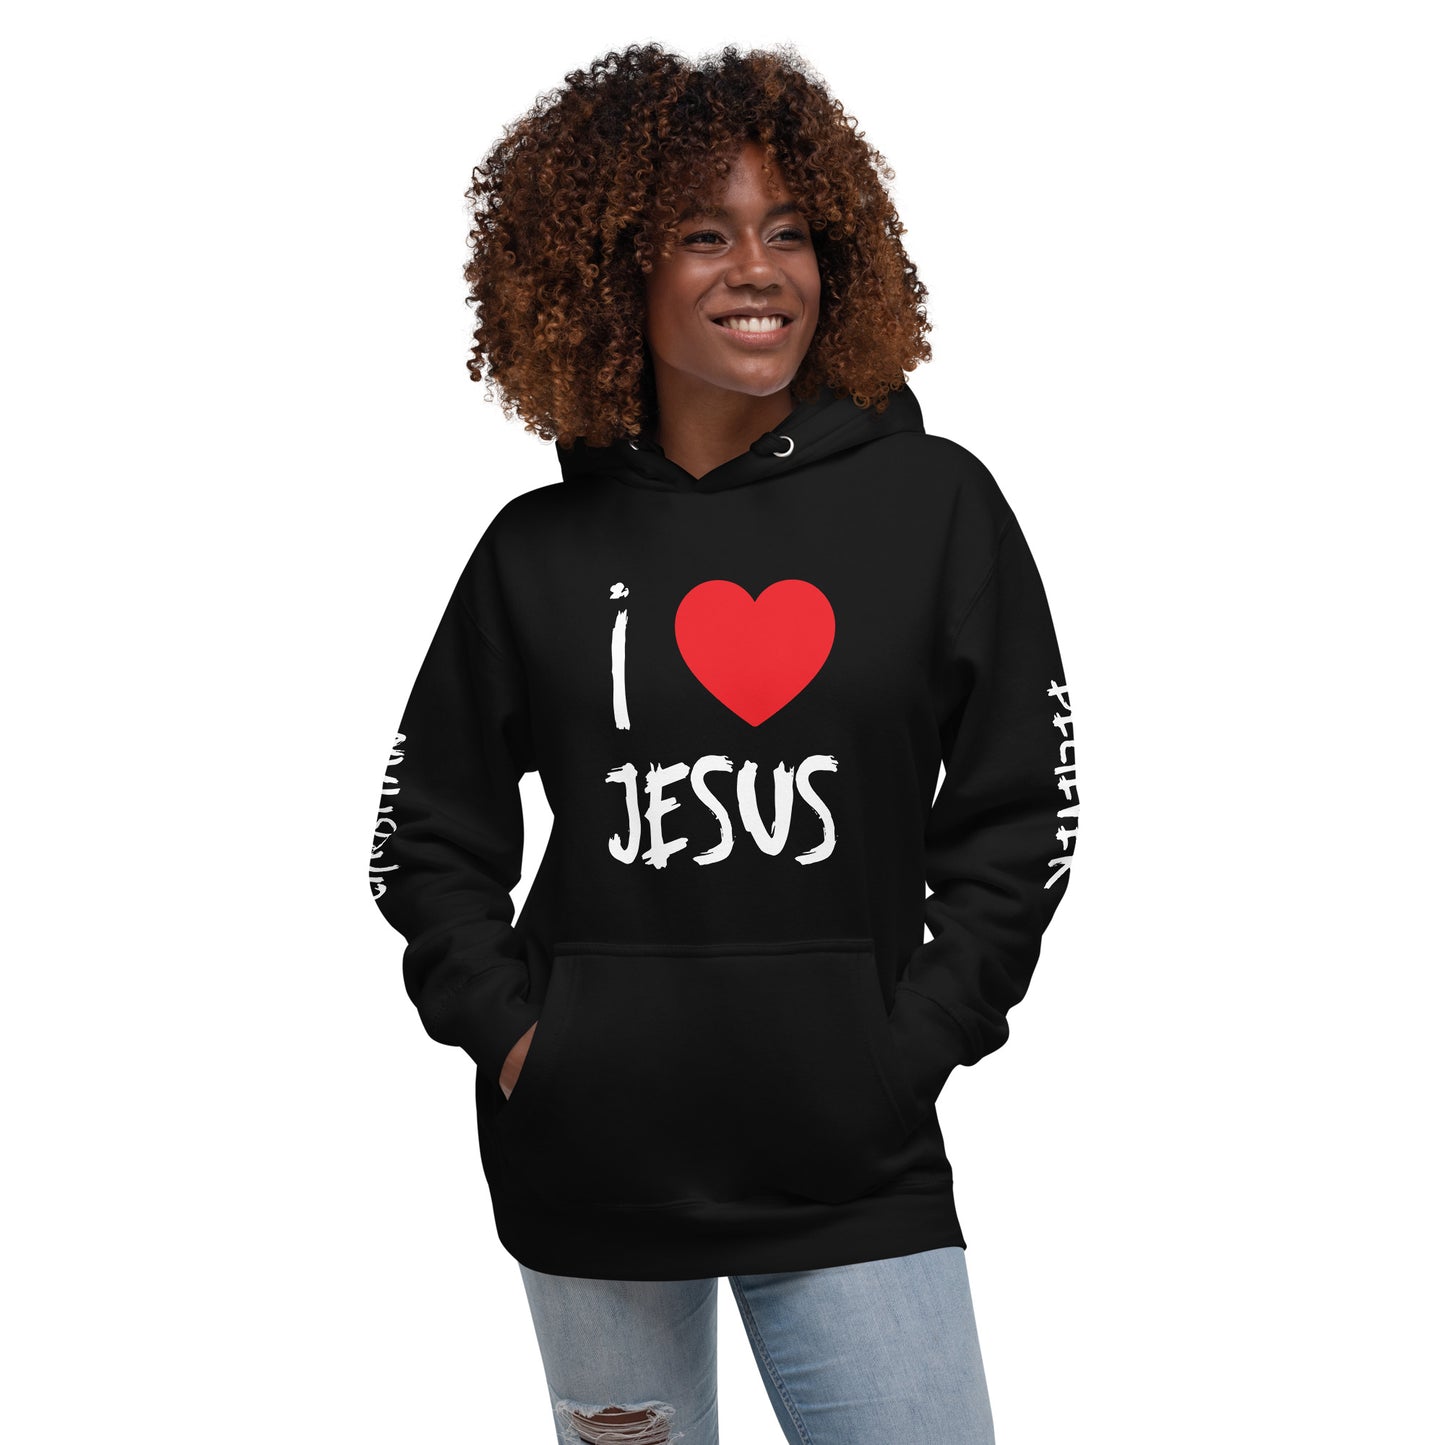 I Love Jesus - Unisex Hoodie